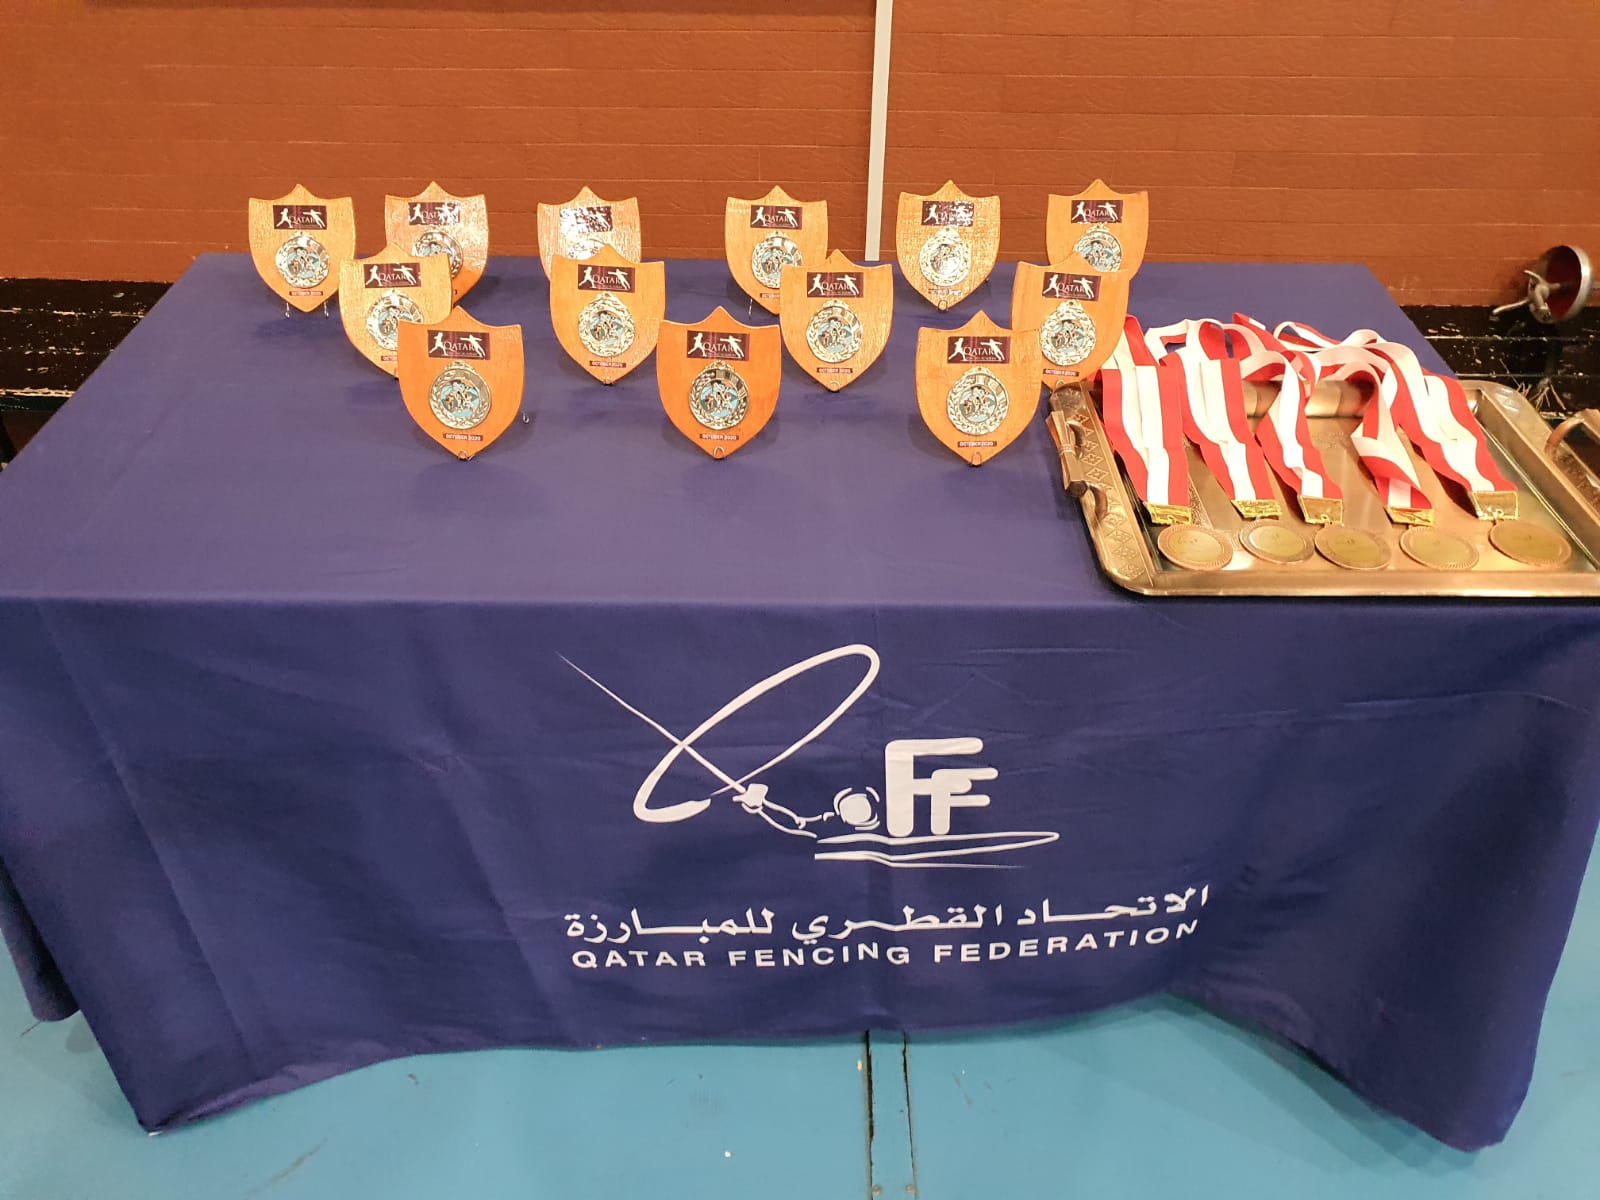 Qatar Fencing Academy